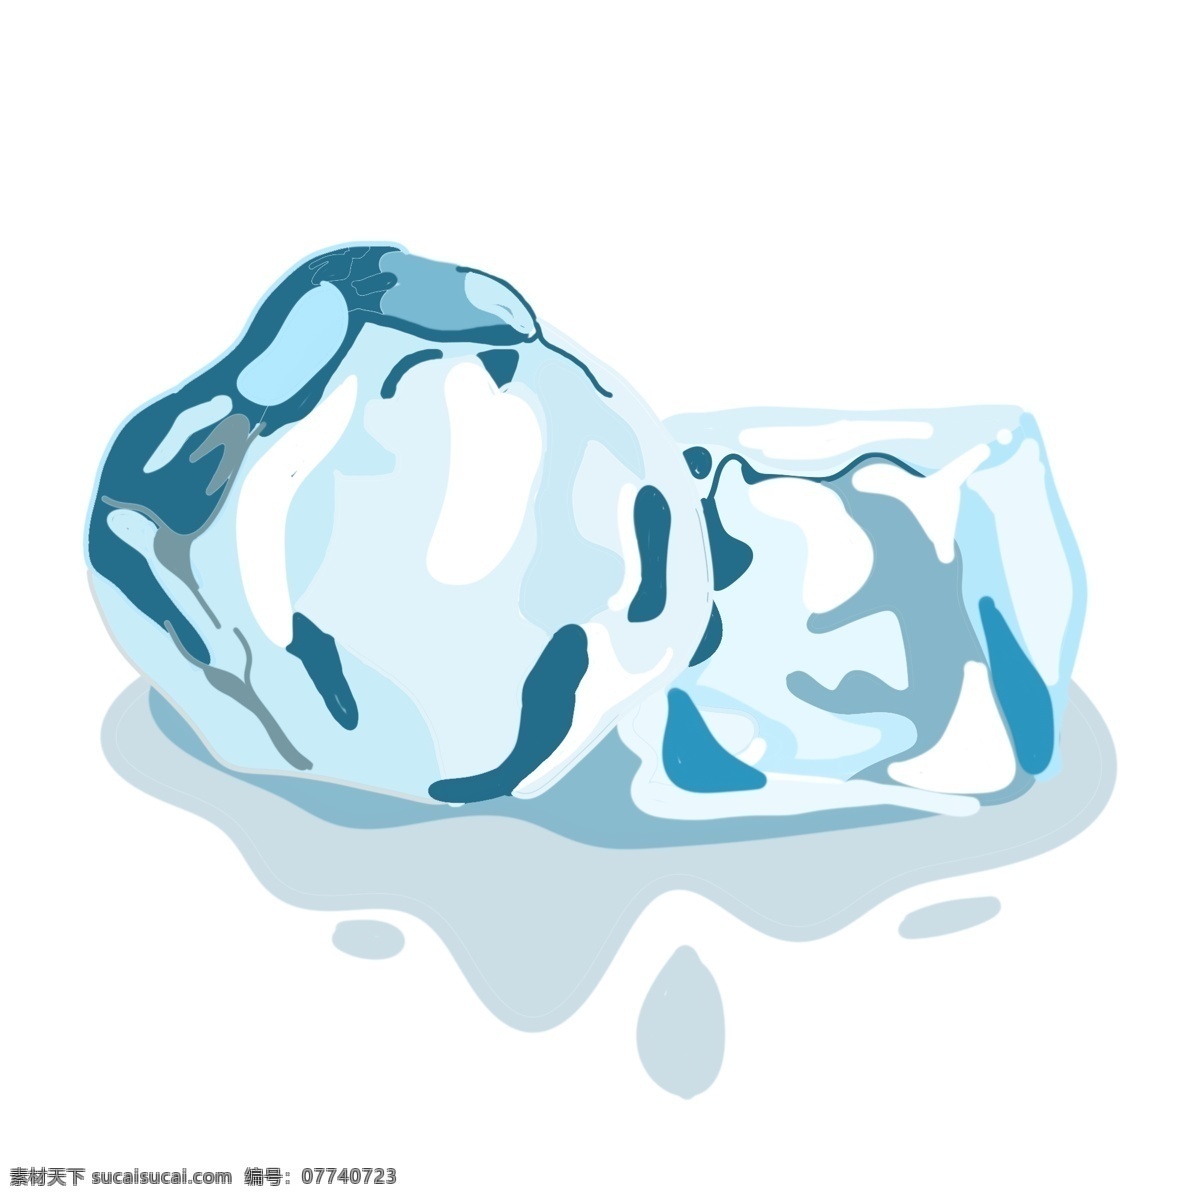 透明 不规则 冰块 插图 冰 固体 透明冰块 不规则冰块 一块冰块 蓝色冰块 立体冰块 夏季 解暑